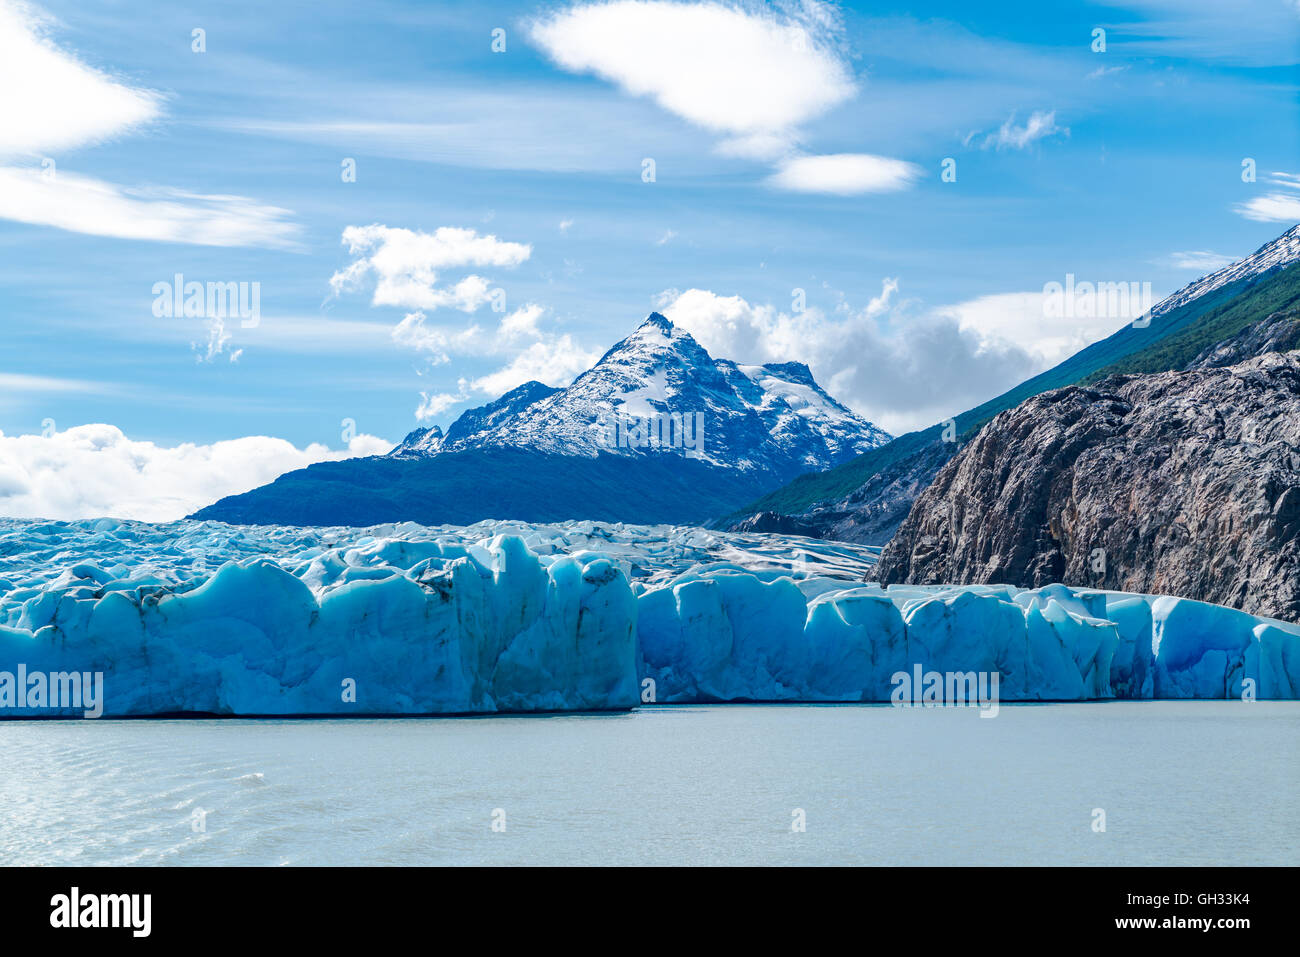 Lago grigio e il ghiacciaio Grey uno dei più grandi campi di ghiaccio al di fuori dei poli, Cile Foto Stock